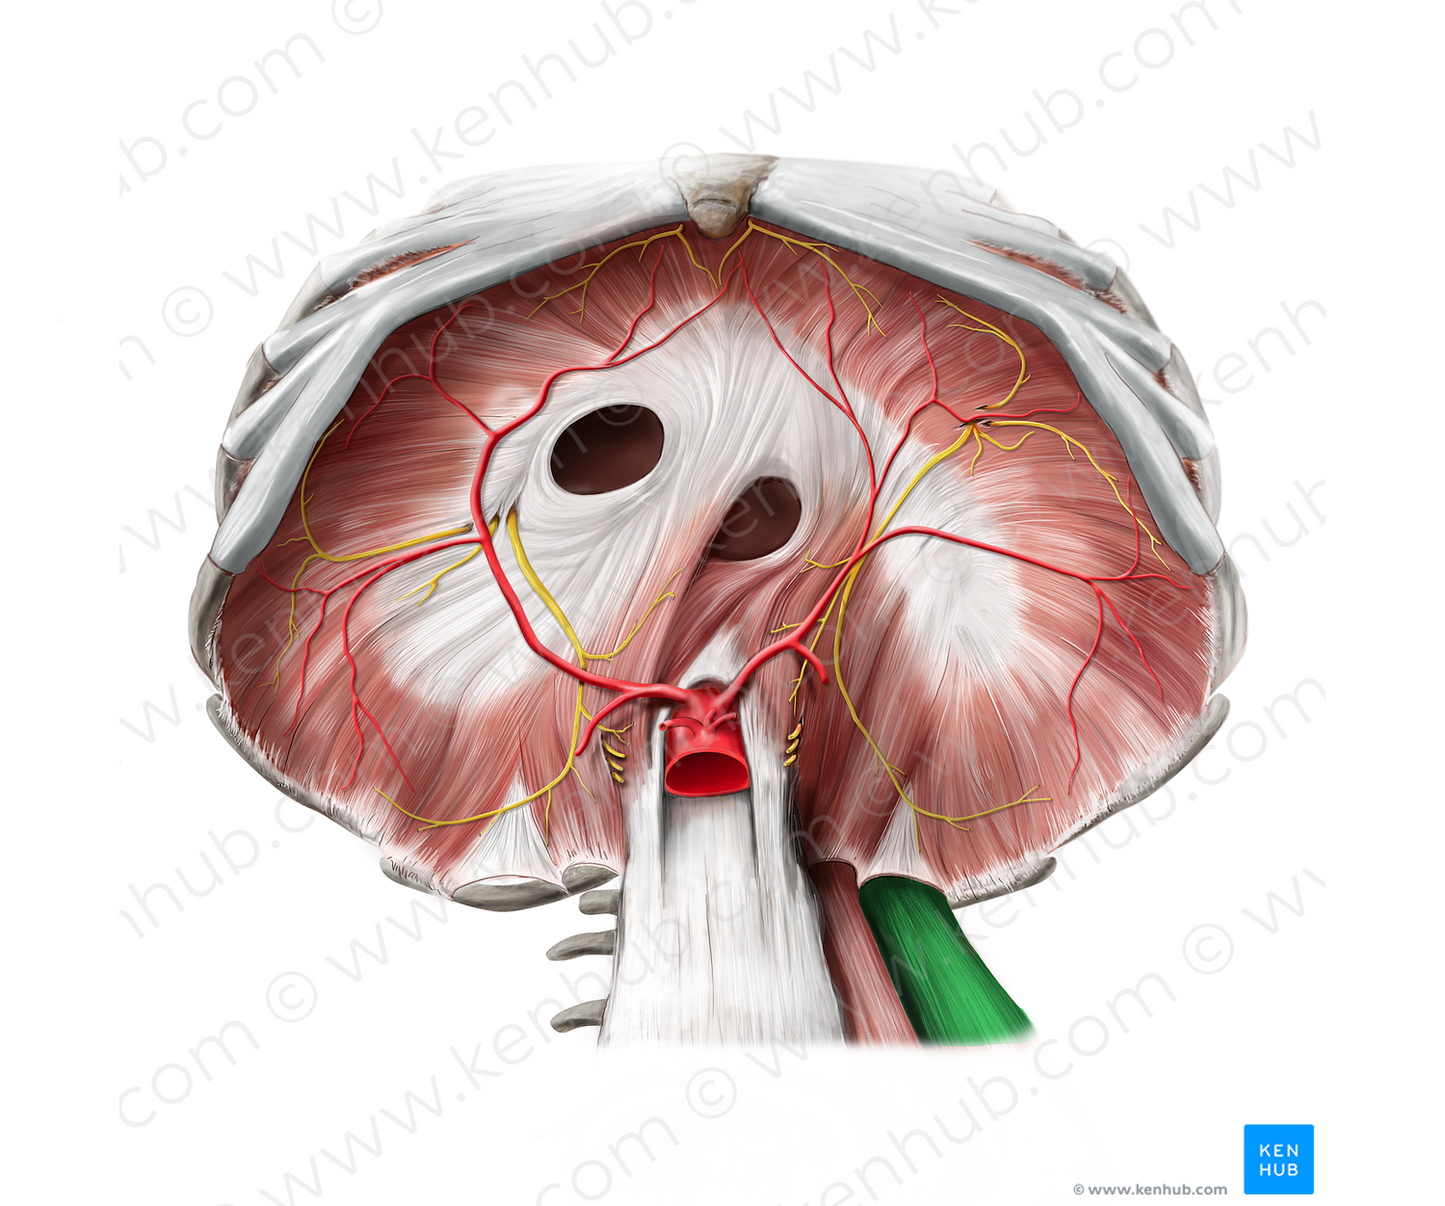 Quadratus lumborum muscle (#5815)